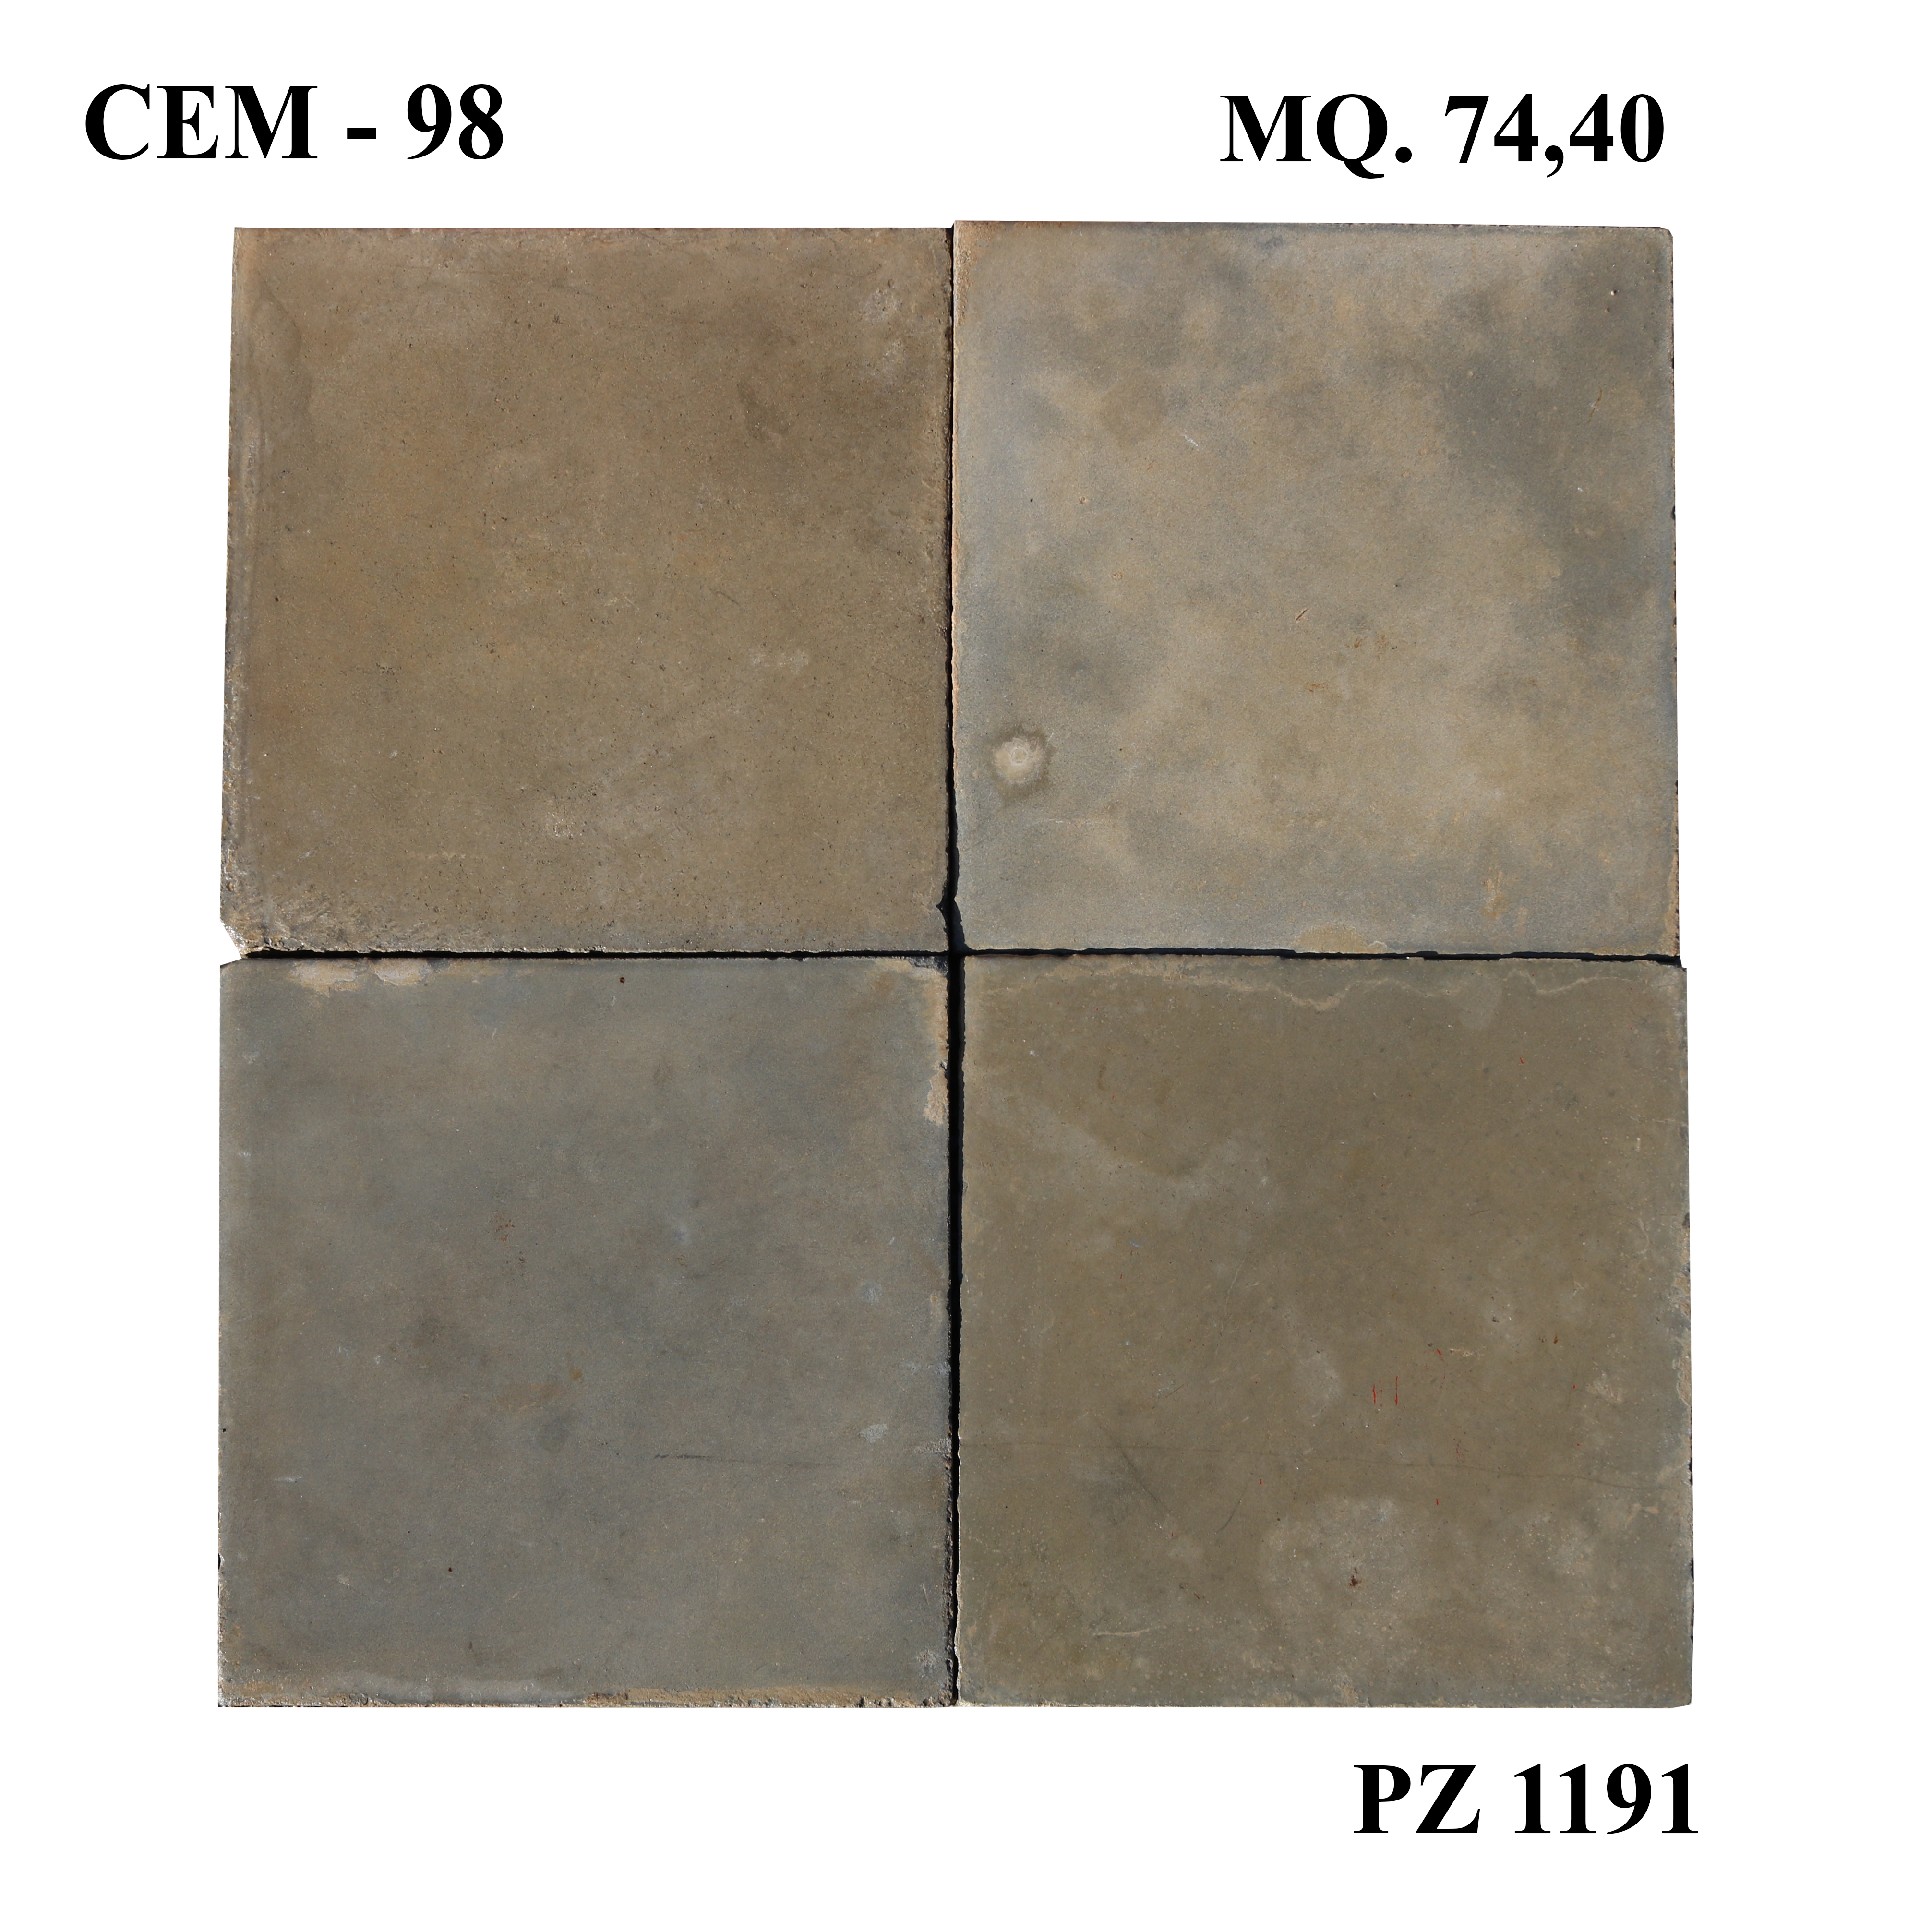 Antica pavimentazione in cementine cm 25x25. - Cementine e Graniglie - Pavimentazioni Antiche - Prodotti - Antichità Fiorillo